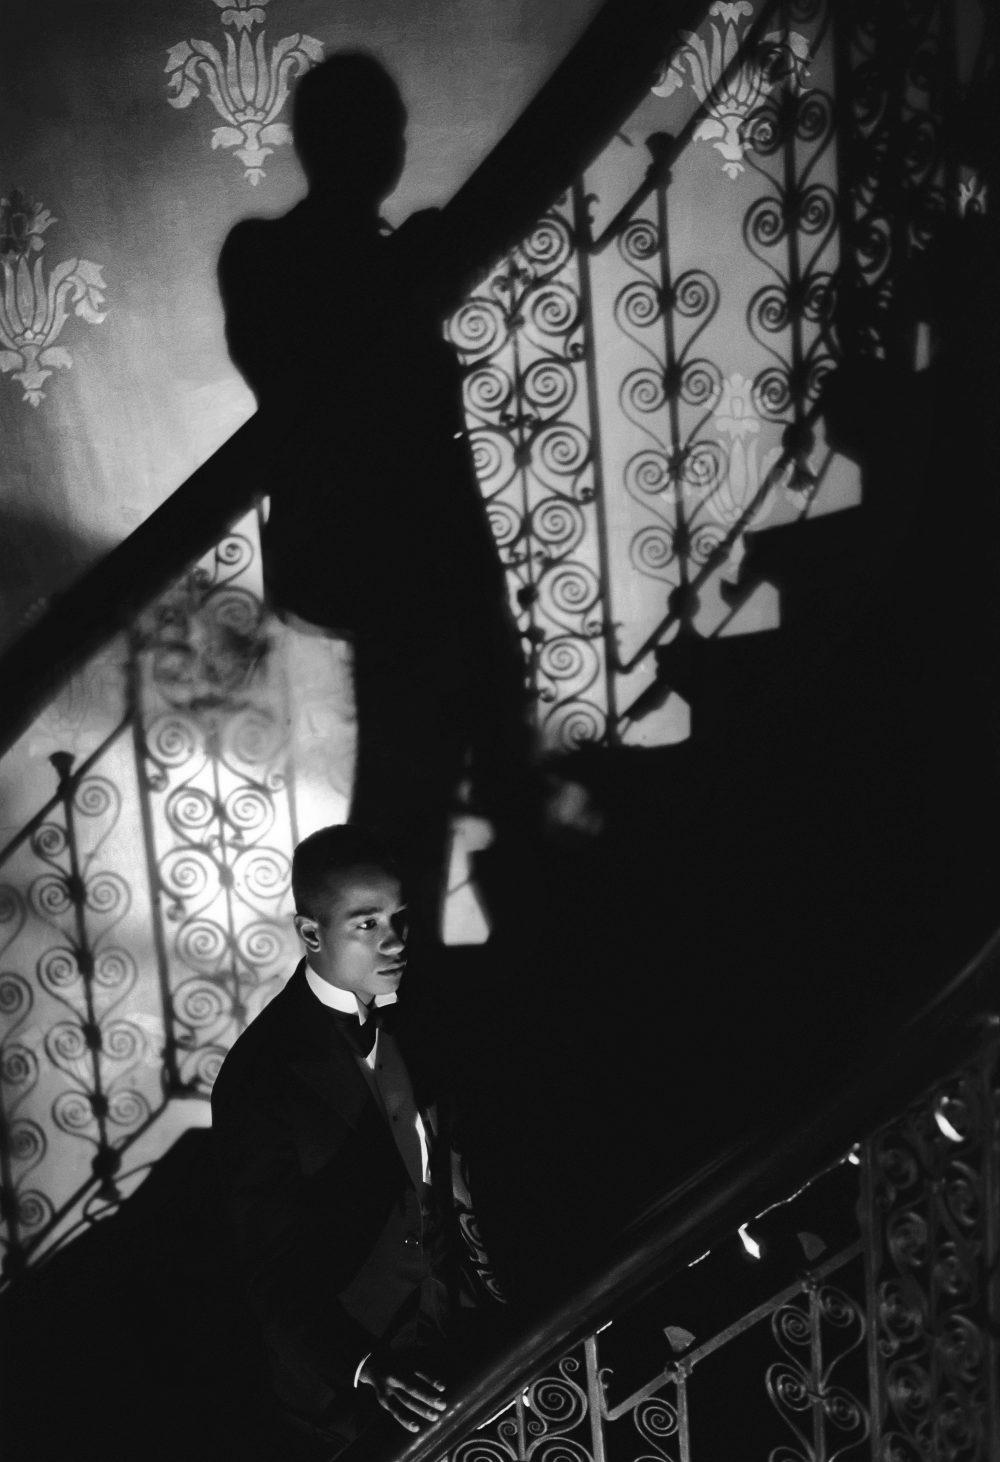 Isaac Julien, Film-Noir Staircase (Looking for Langston Vintage Series), 1989/2016. Ed.